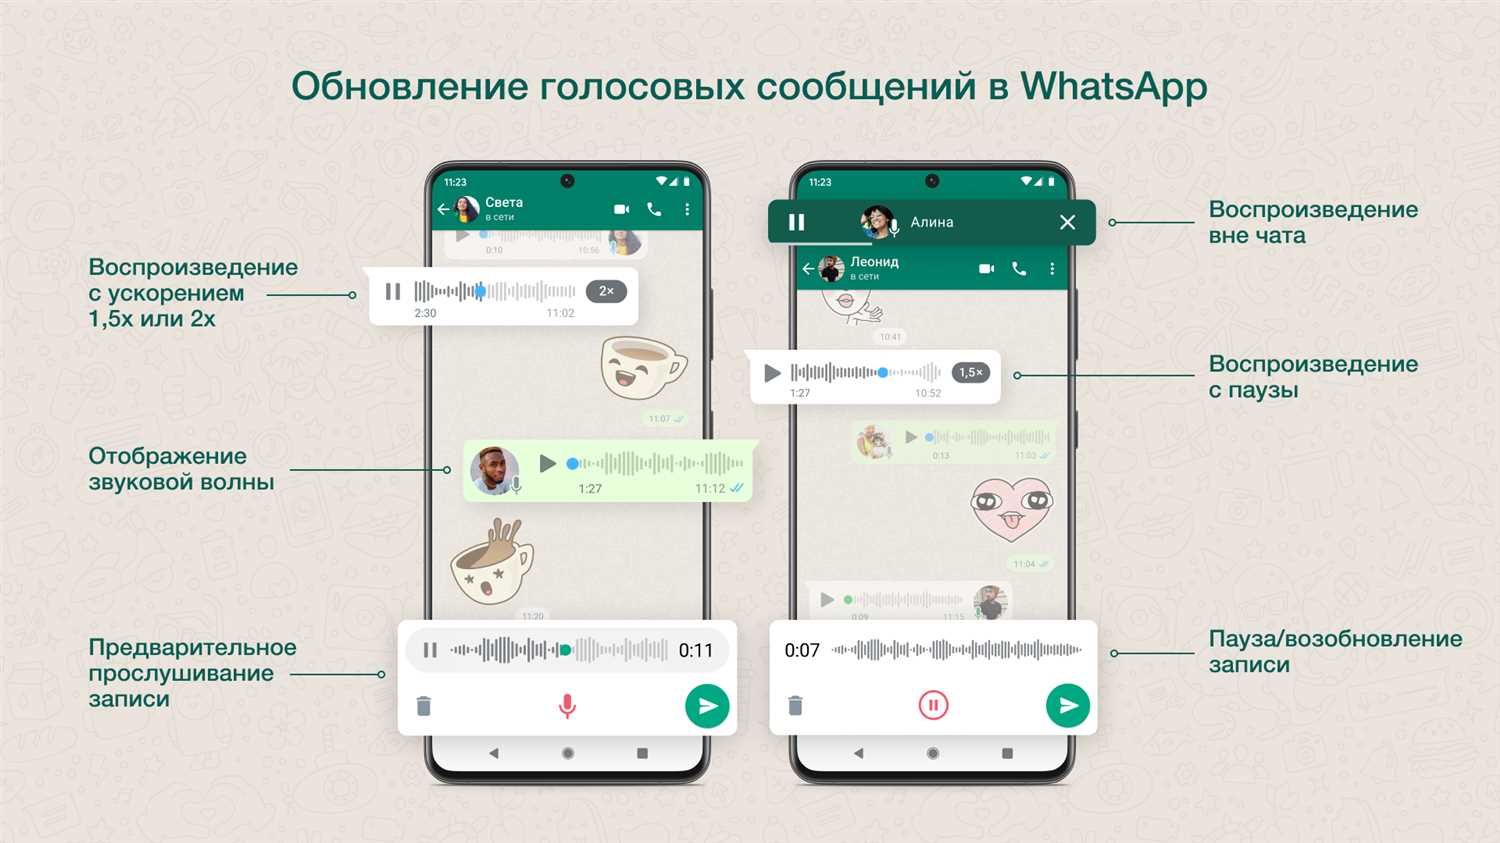 Почему нельзя прослушать голосовое сообщение в WhatsApp